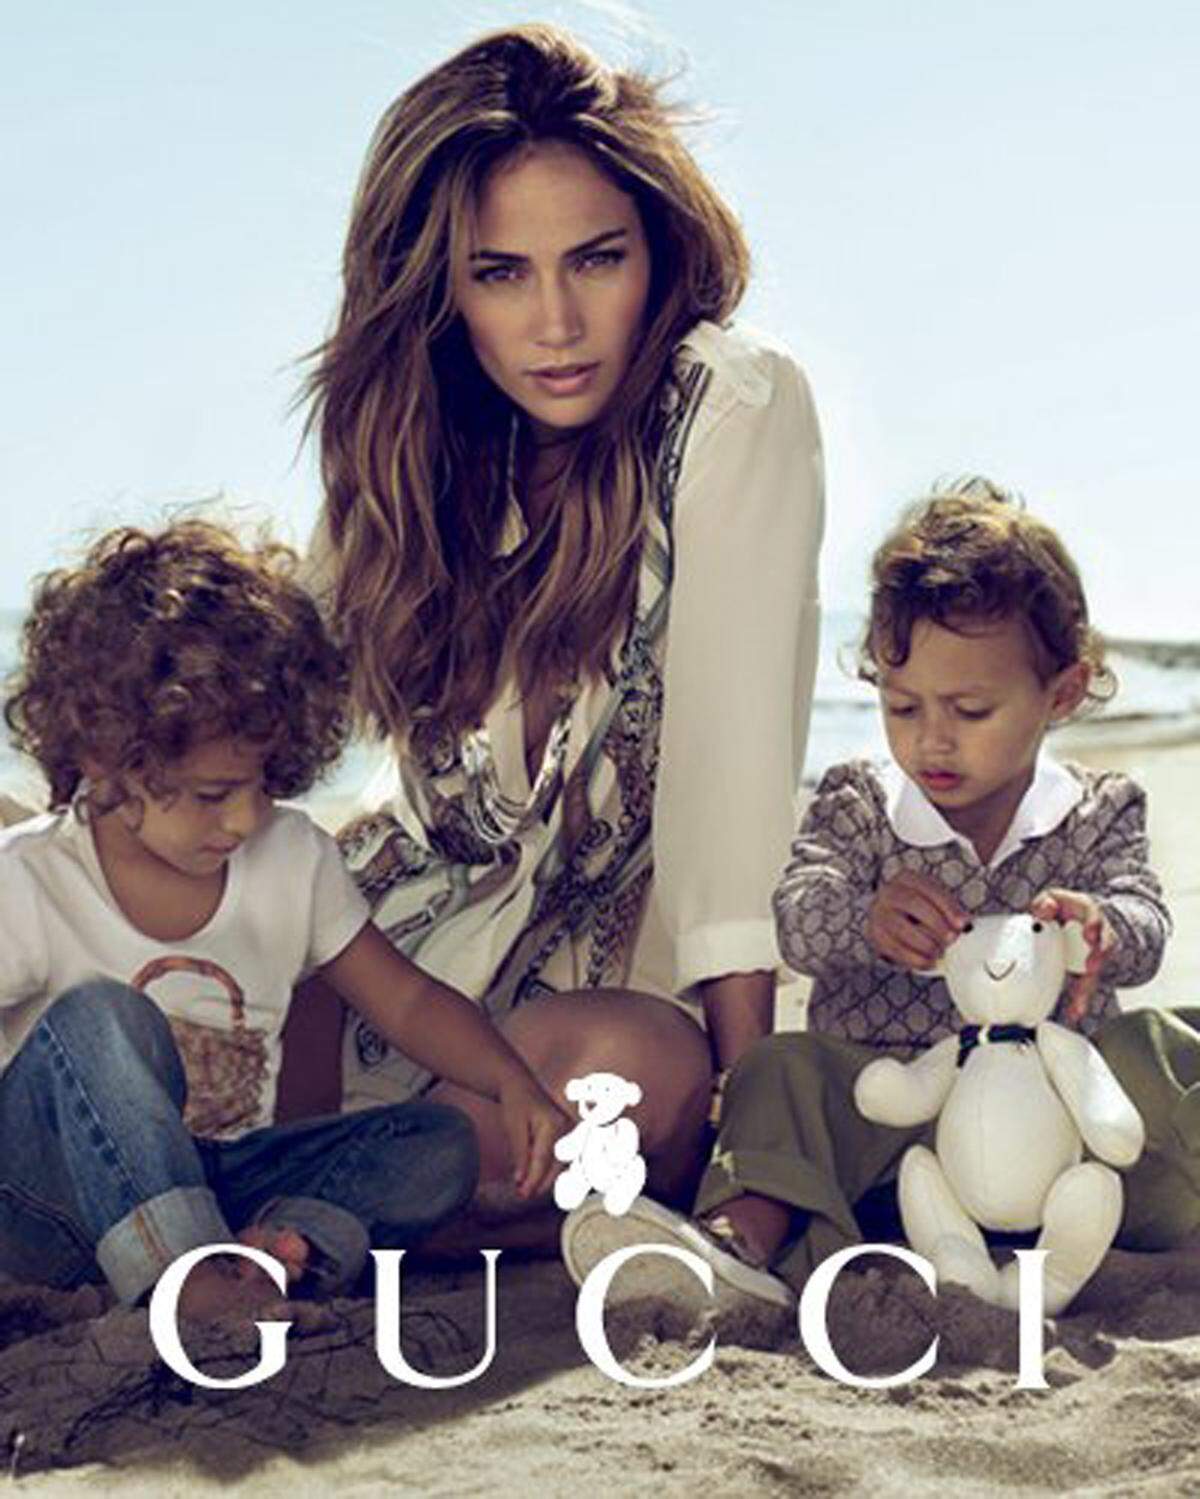 Gesanglich halten sich Max und Emme, die Zwillinge von Jennifer Lopez noch zurück. In der Gucci-Kampagne an der Seite ihrer Mutter machen sie dennoch eine gute Figur.